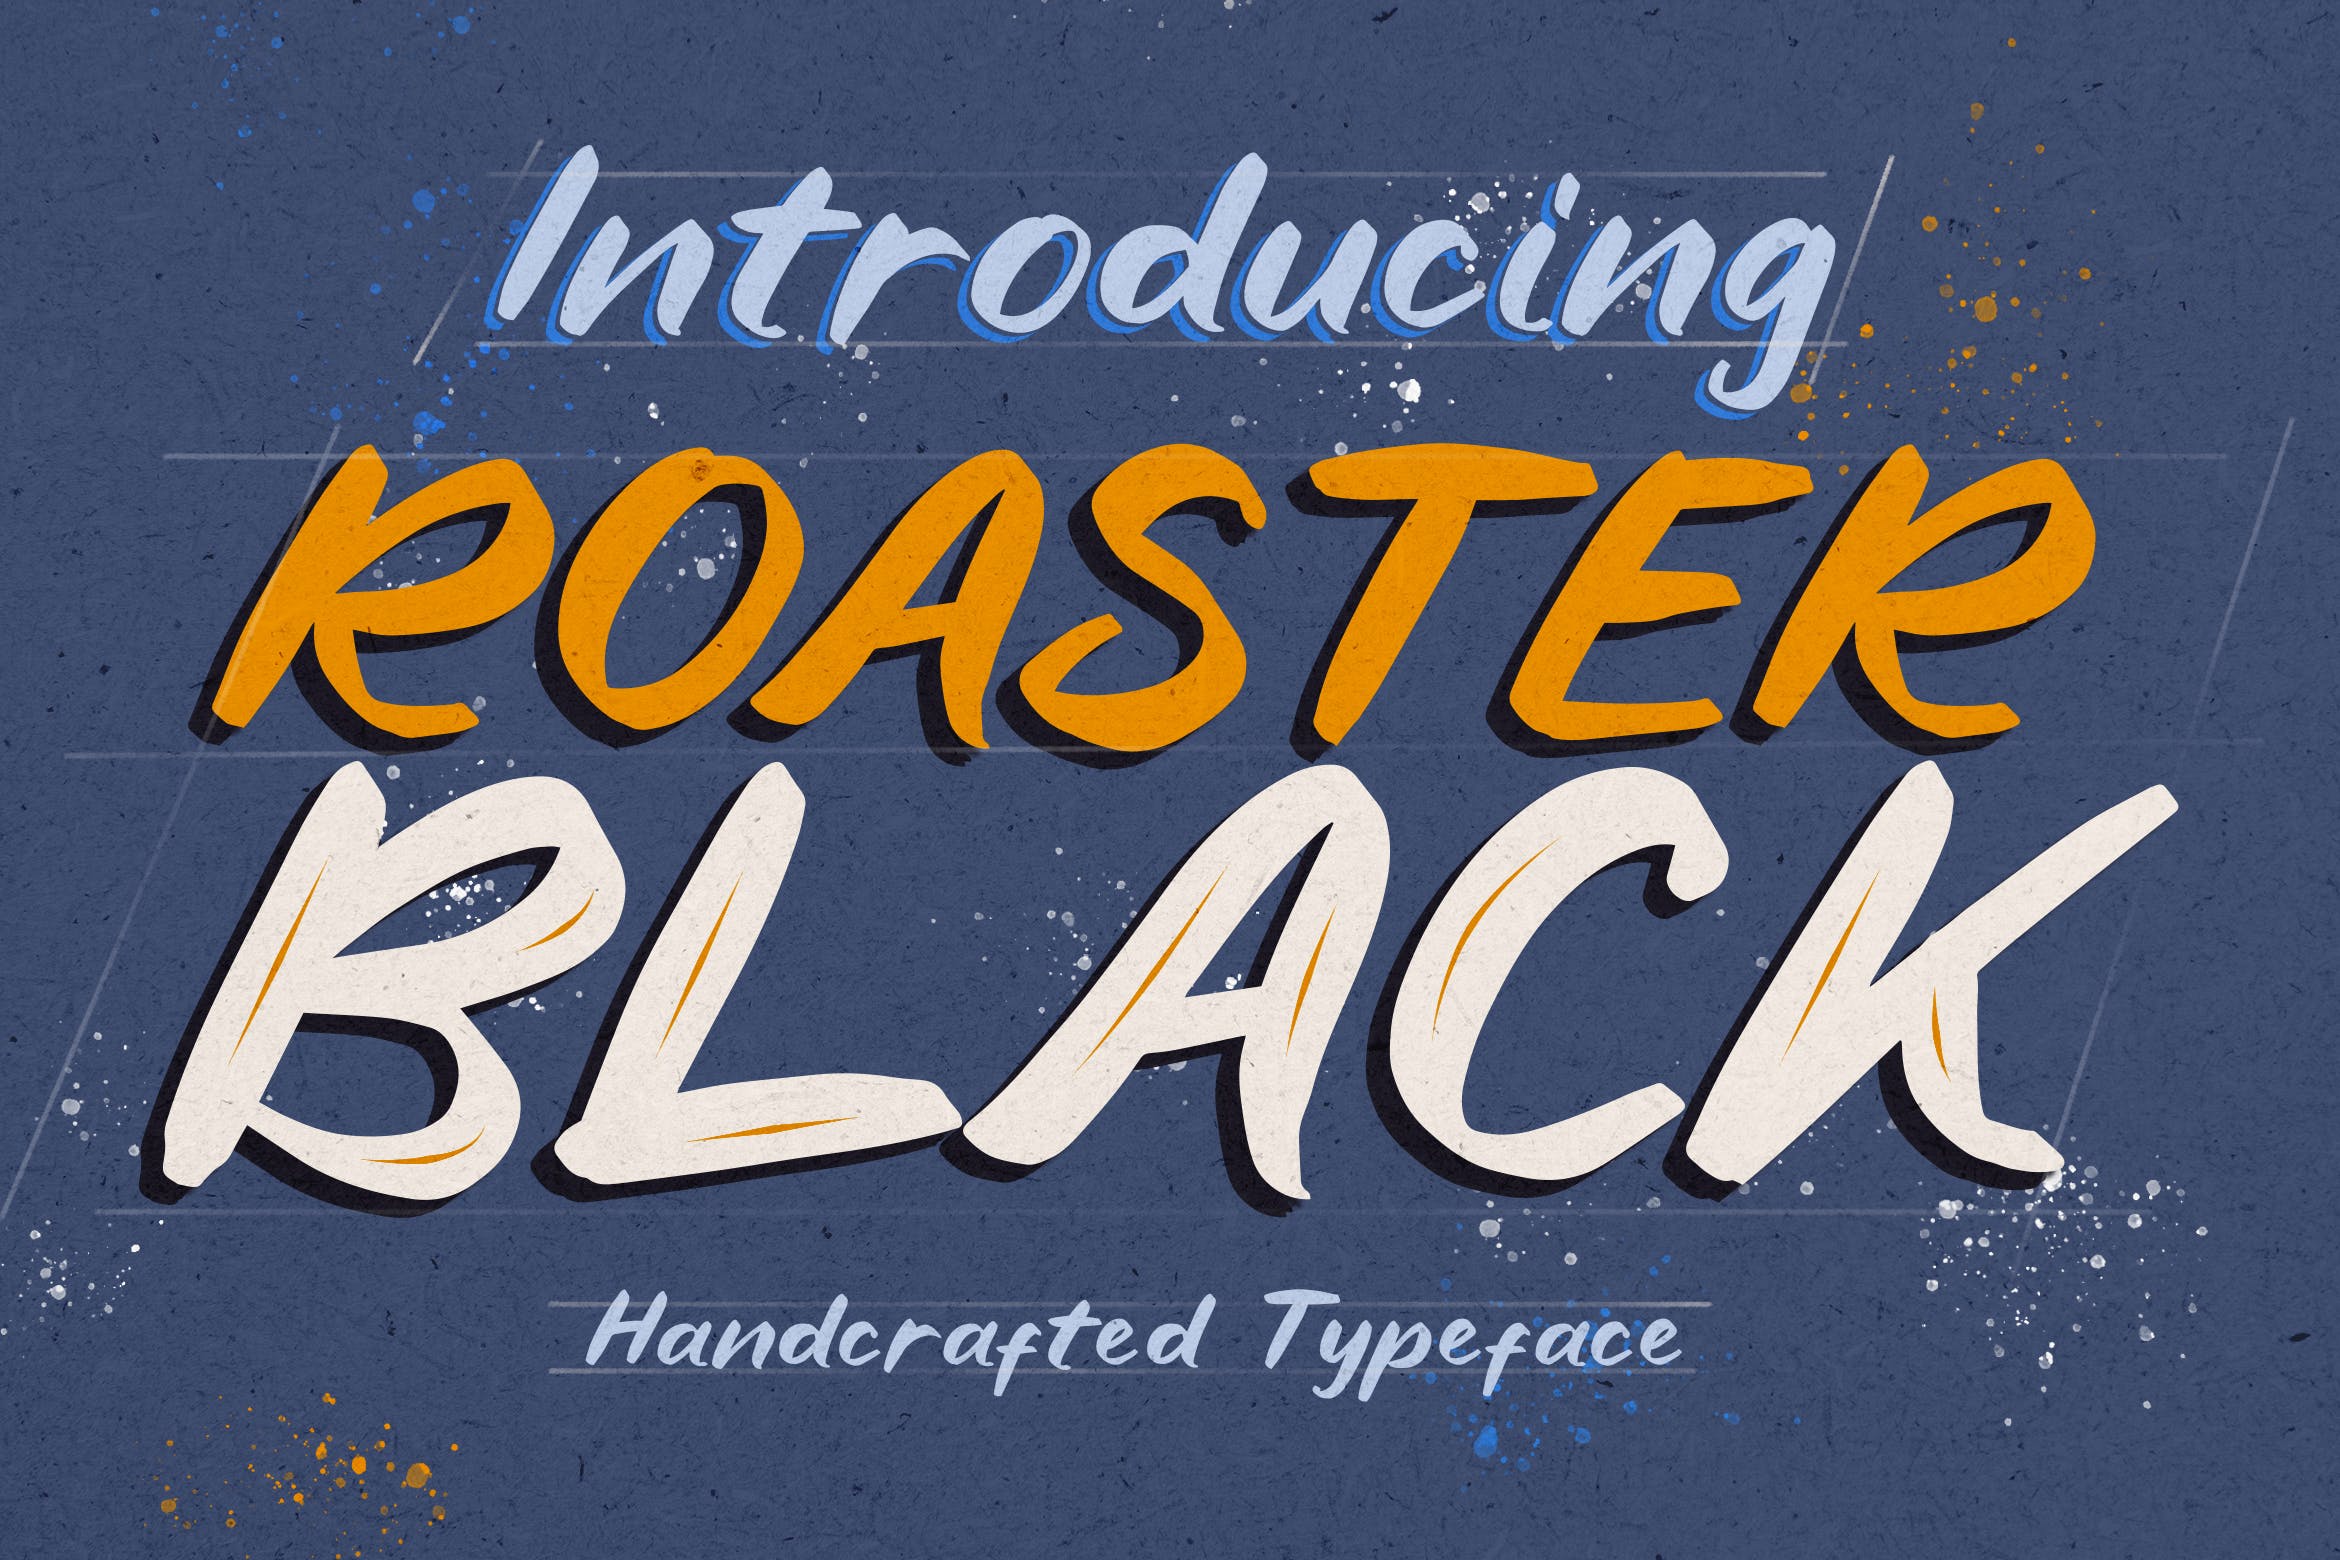 创意英文斑驳效果手写字体 Roaster Black 设计素材 第1张